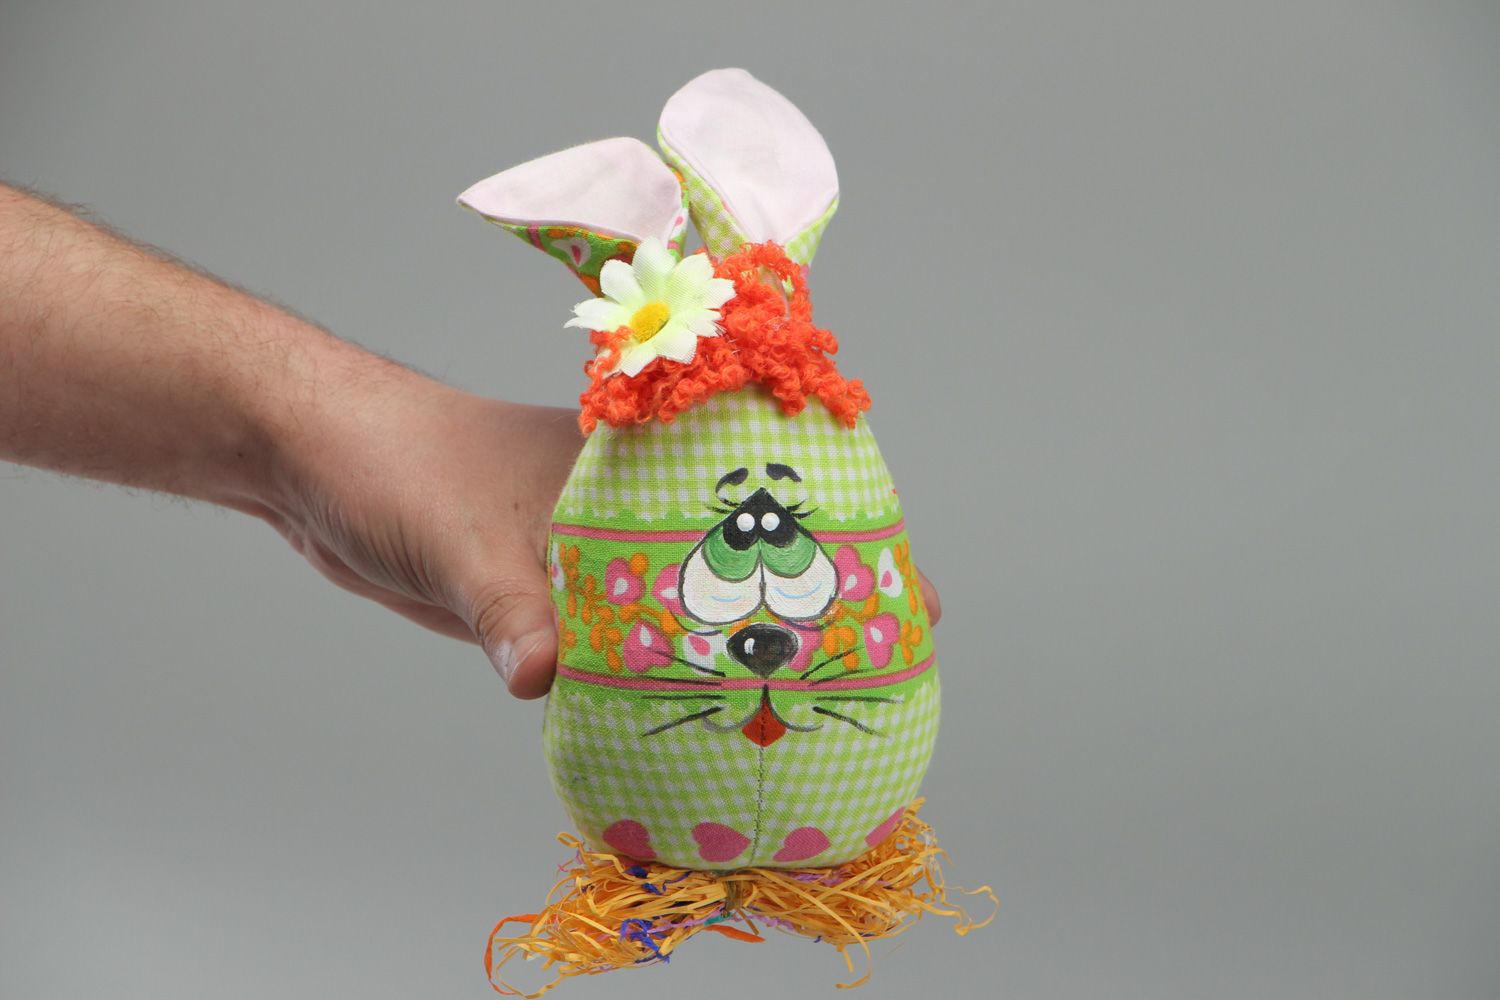 Мягкая игрушка из ткани пошитая вручную Пасхальный кролик-яйцо фото 4